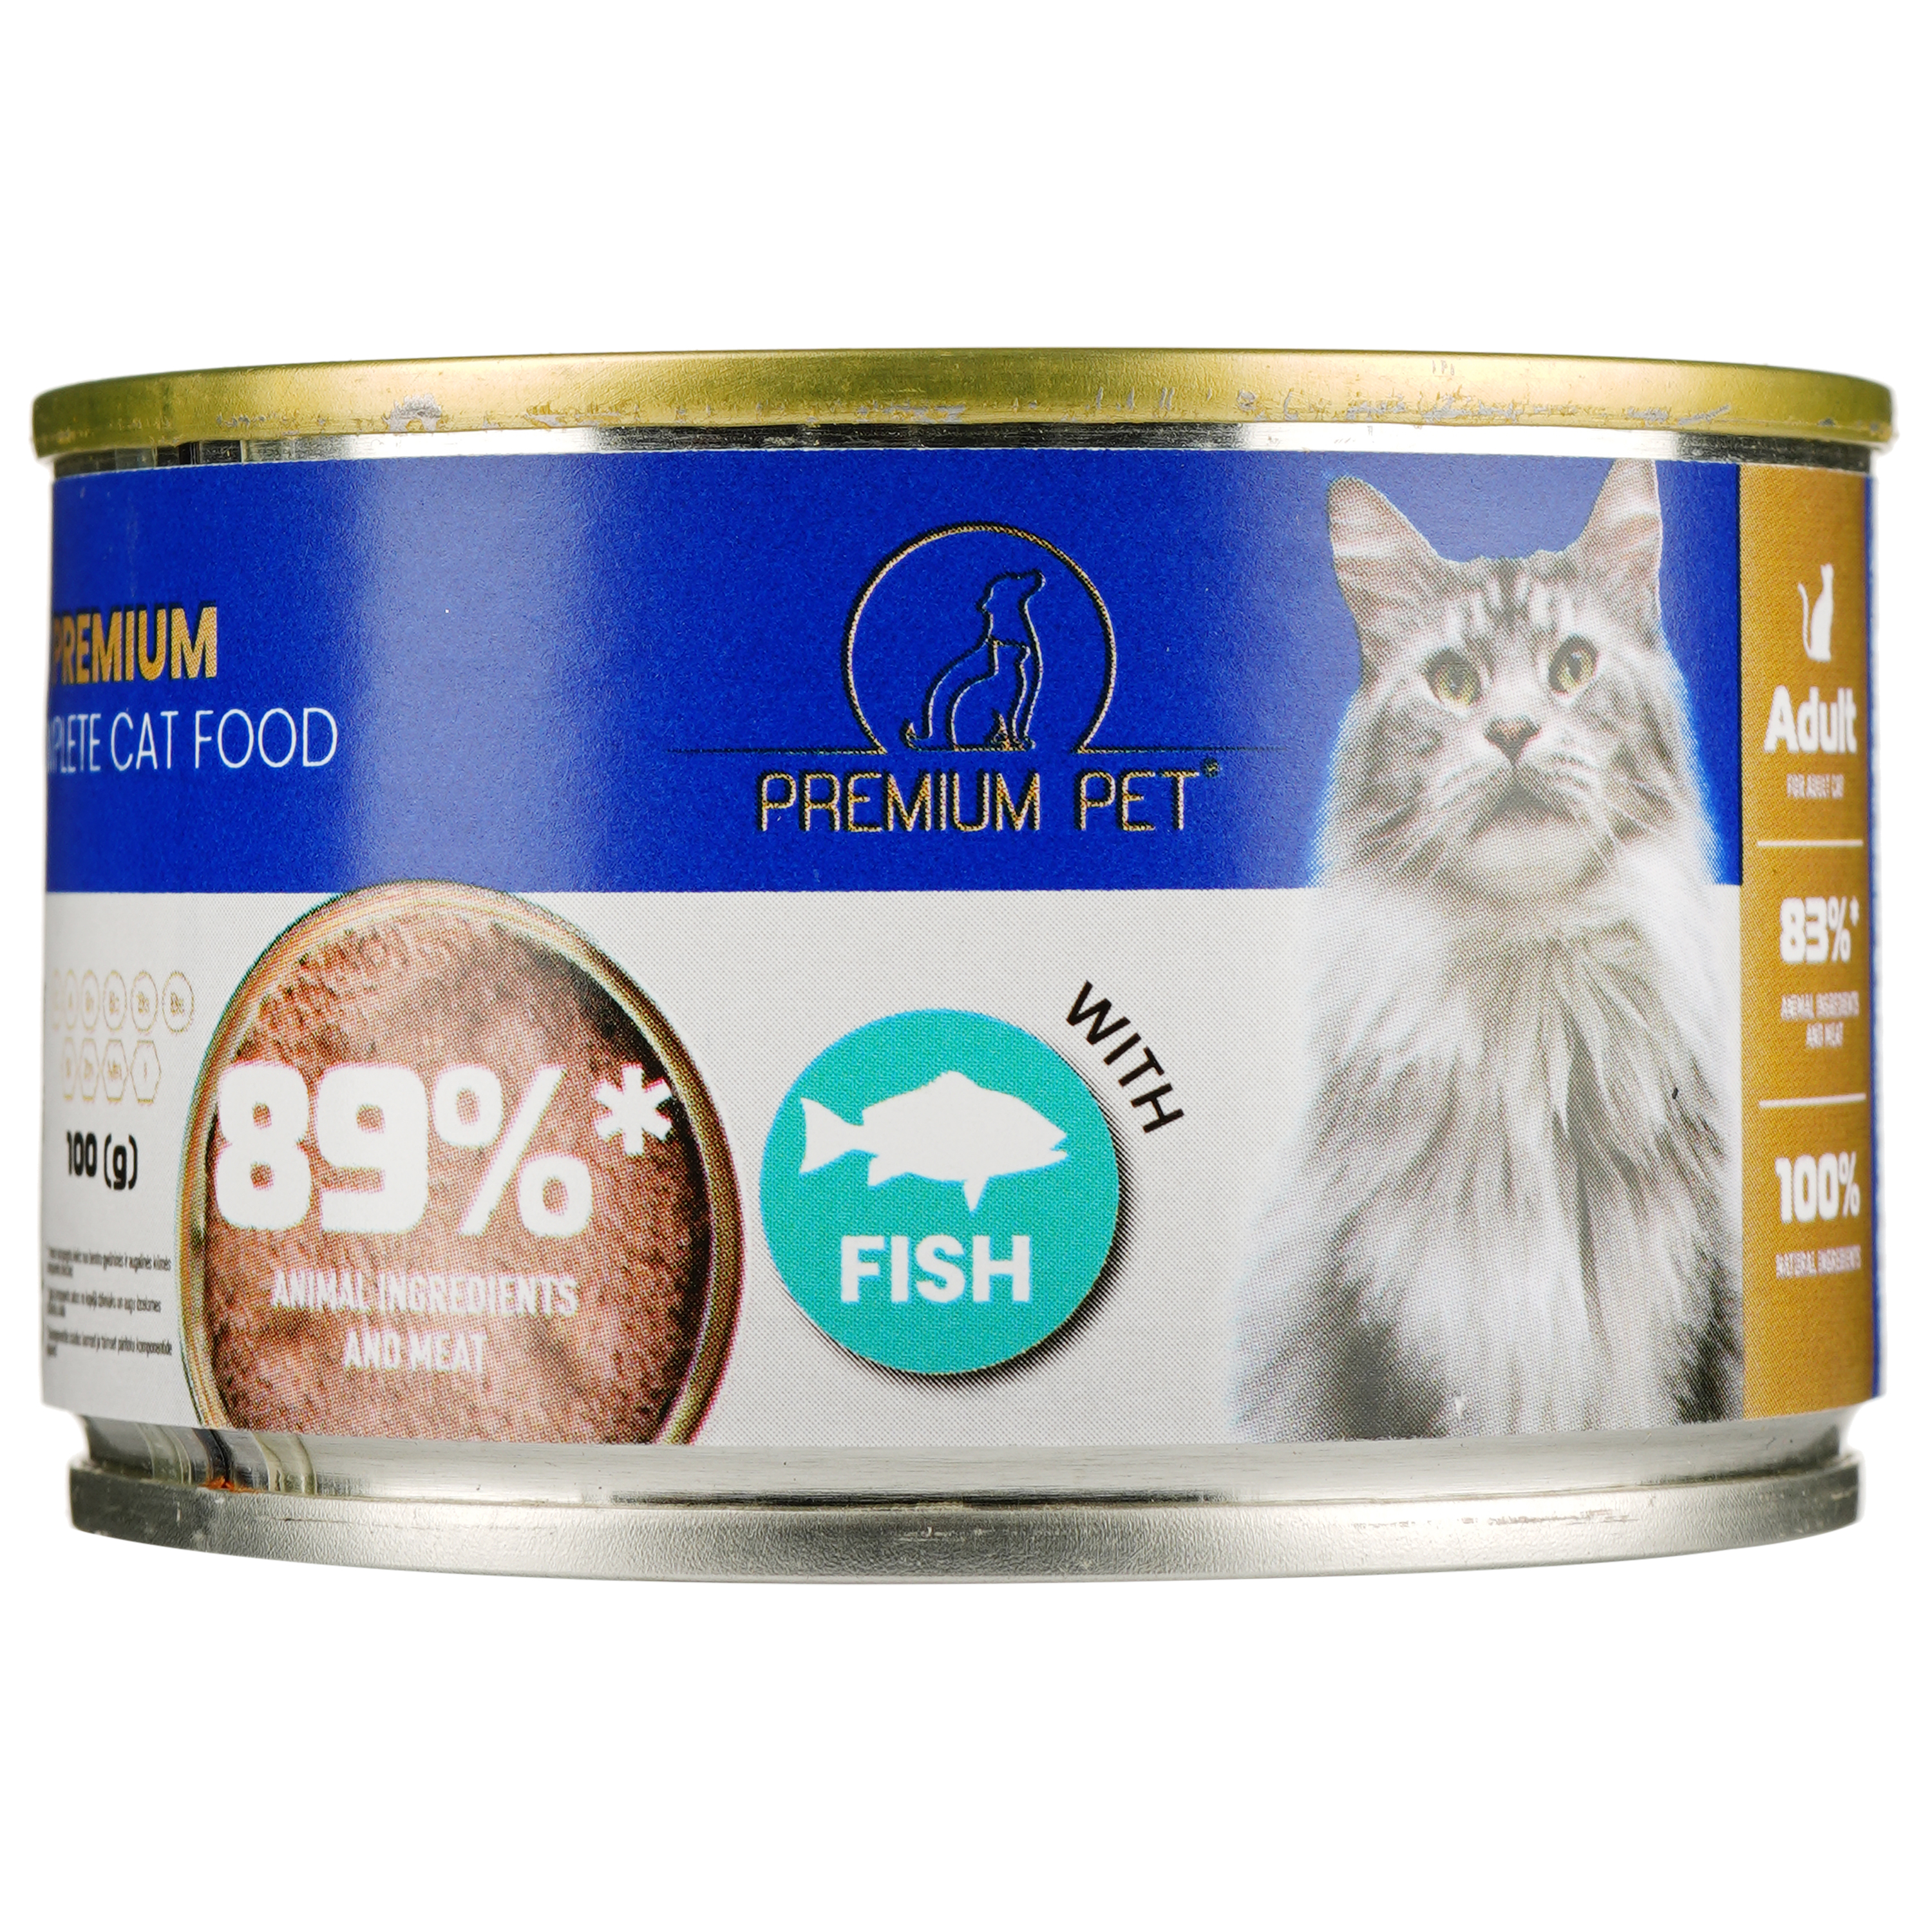 Паштет для взрослых кошек Premium Pet с рыбой 100 г - фото 2